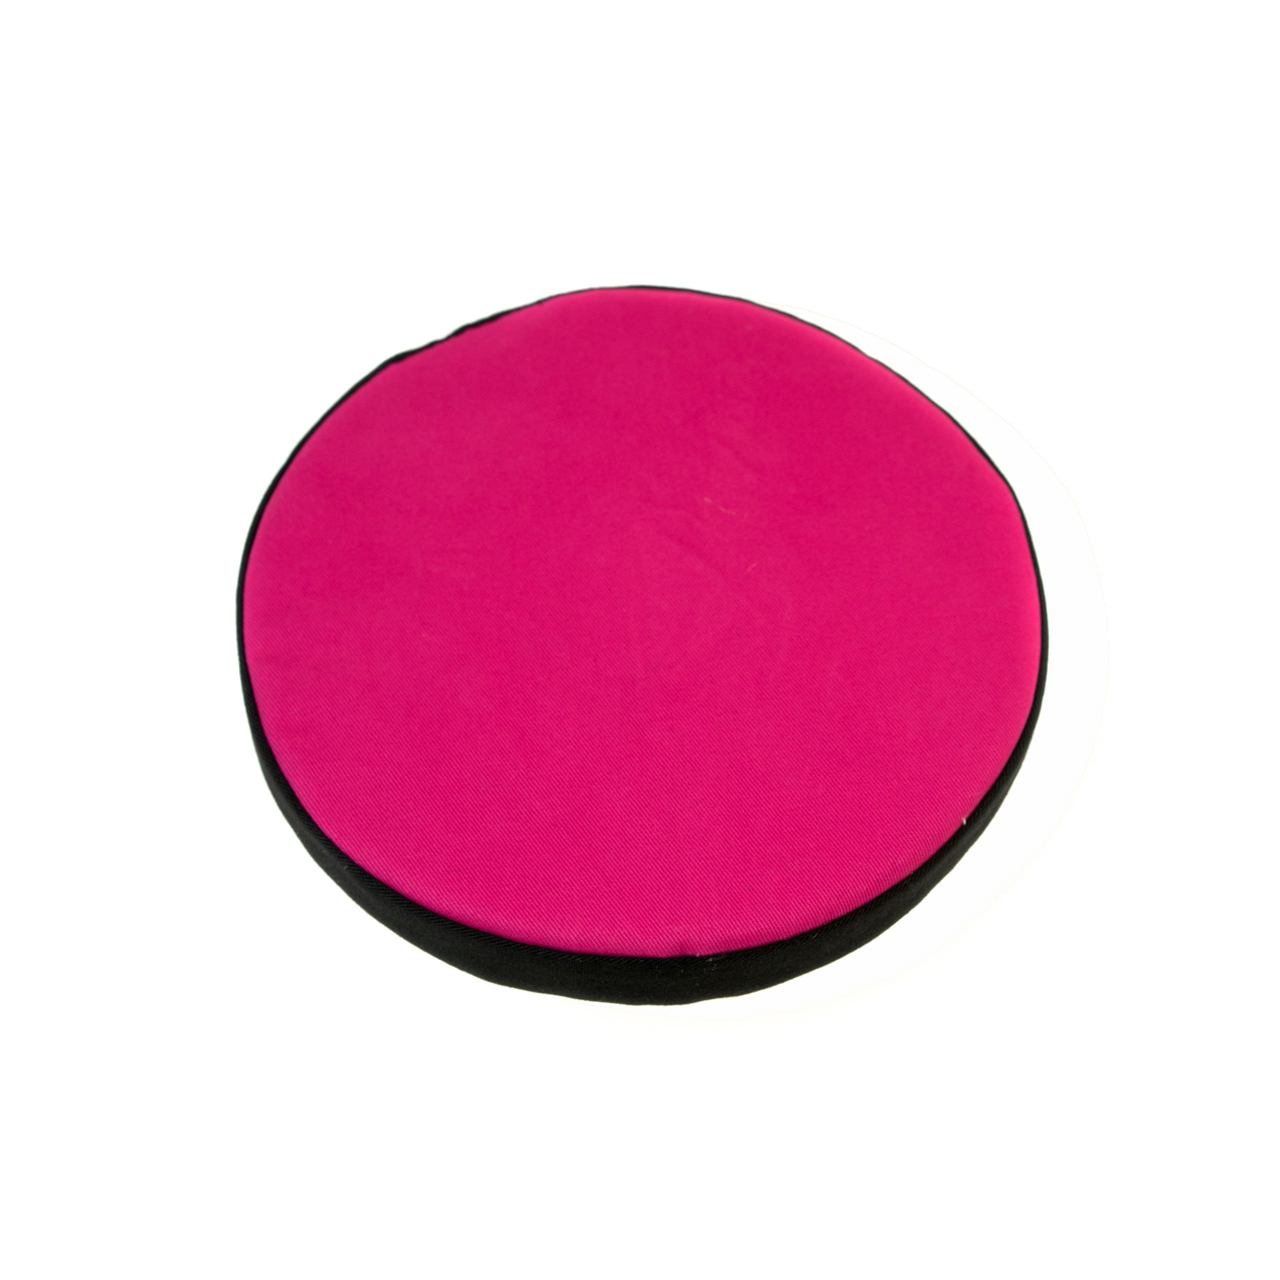 Rundes Kissen für Klangschale pink mit schwarzer Borte Durchmesser 18 cm